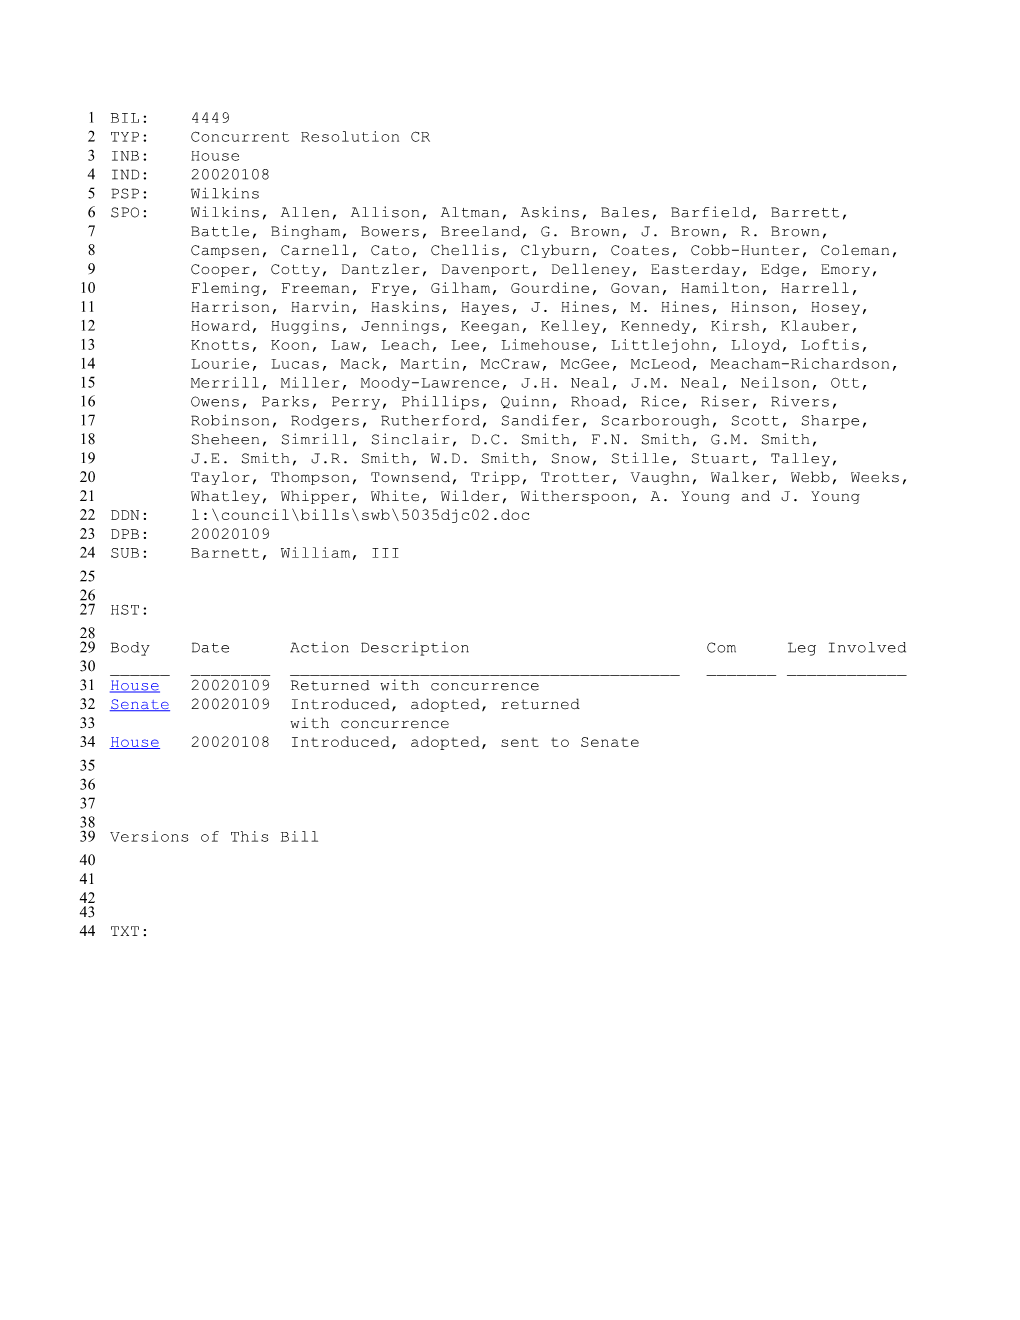 2001-2002 Bill 4449: Barnett, William, III - South Carolina Legislature Online